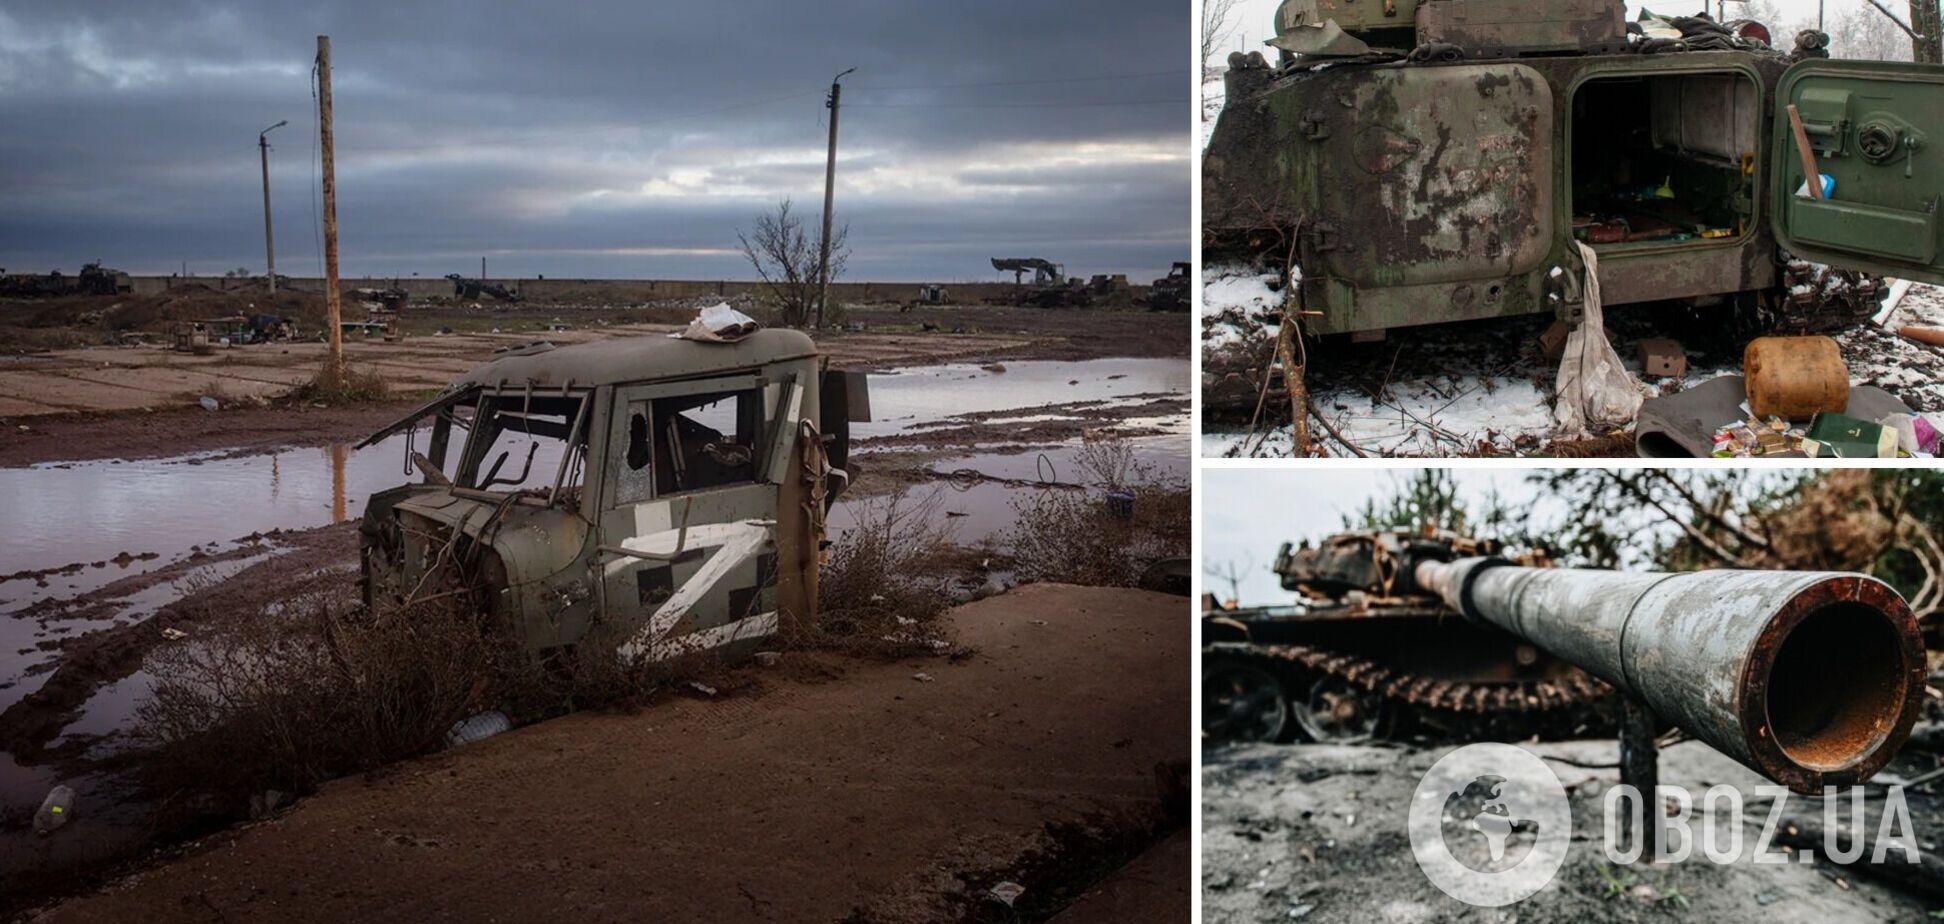 Потери РФ в войне против Украины превысили 86 тыс. человек, за сутки уничтожено шесть вражеских БПЛА